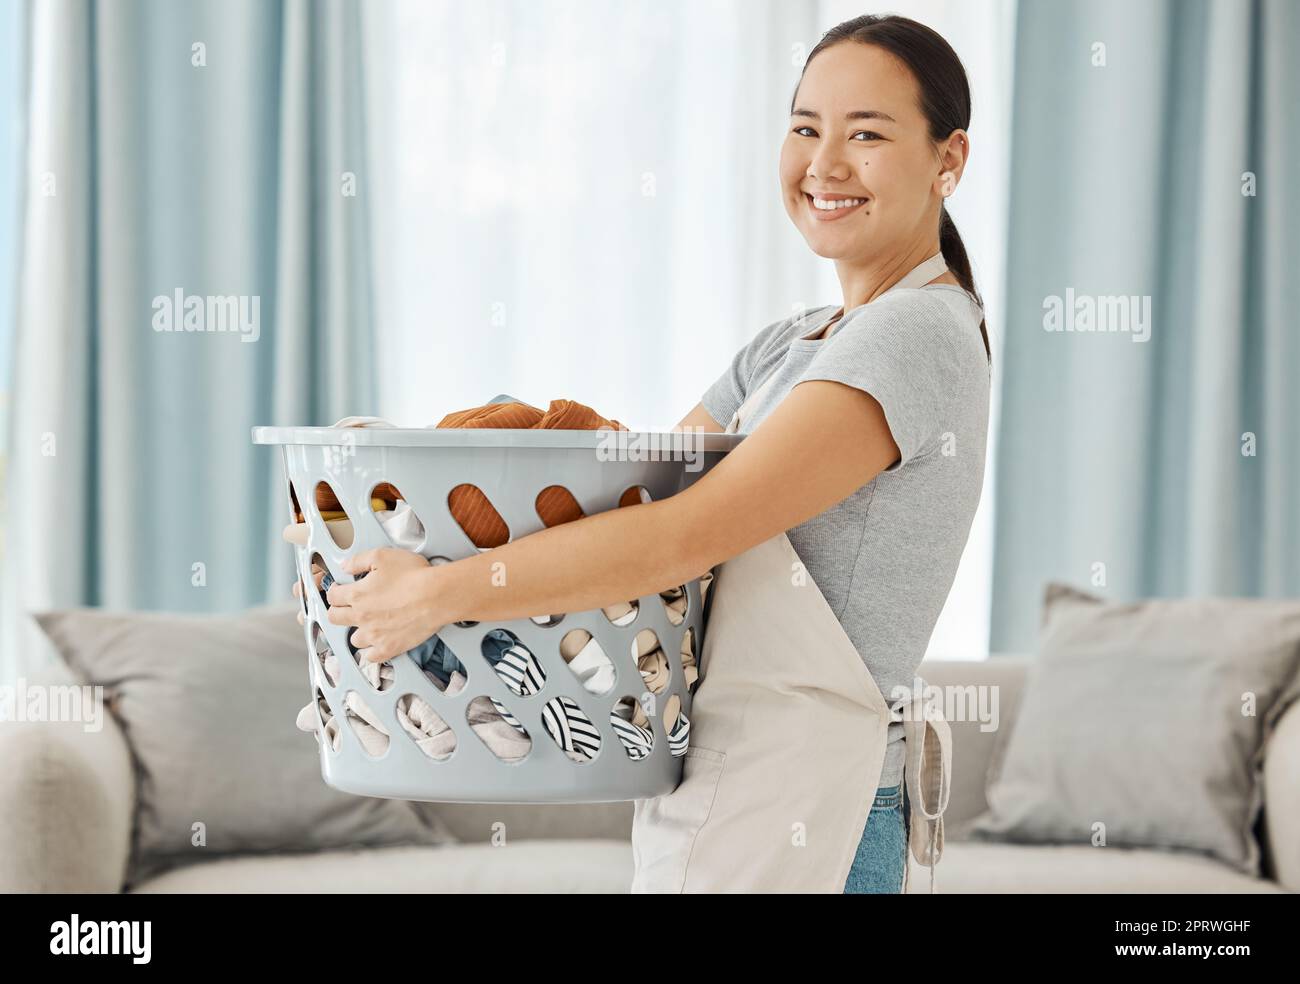 Glückliche asiatische Putzfrau mit Wäscherei arbeitet für Haus, Haus oder Hotel Gastfreundschaft Reinigung Service Agentur. Japanische Zimmermädchen oder Arbeiter lächeln in der Wohnung mit schmutzigen Kleidern im Waschkorb Stockfoto